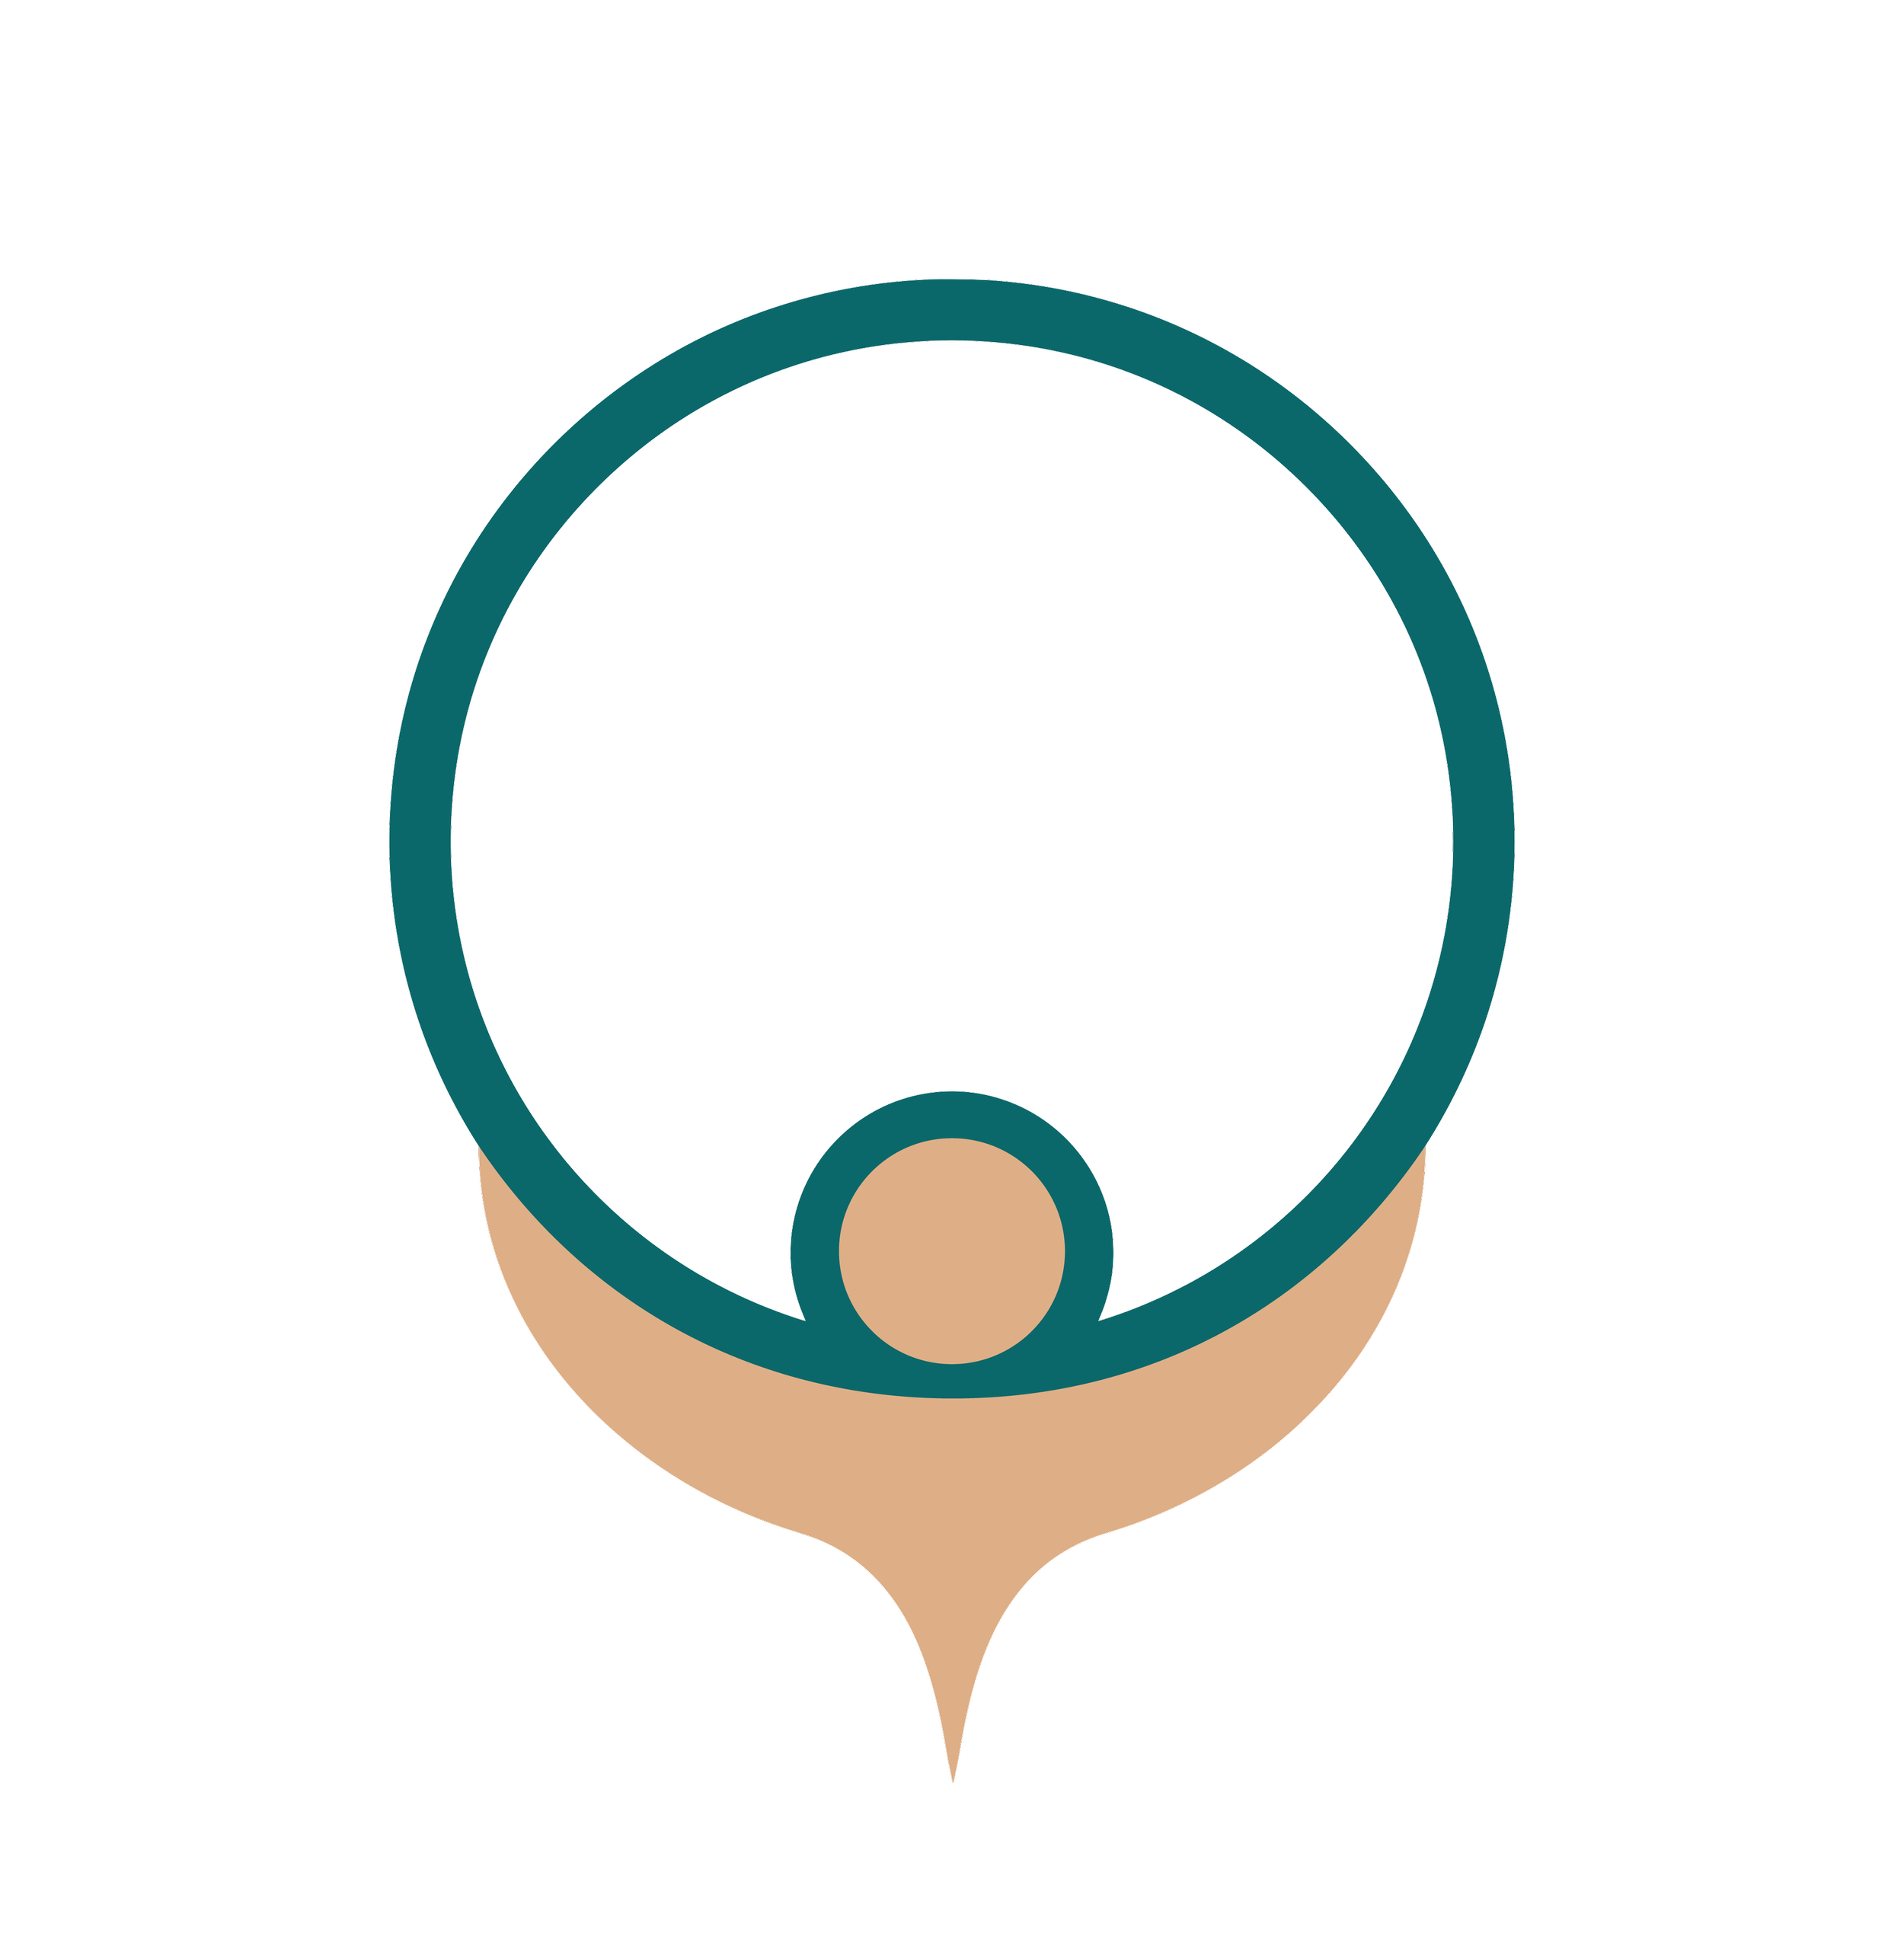 The Onero Institute logo